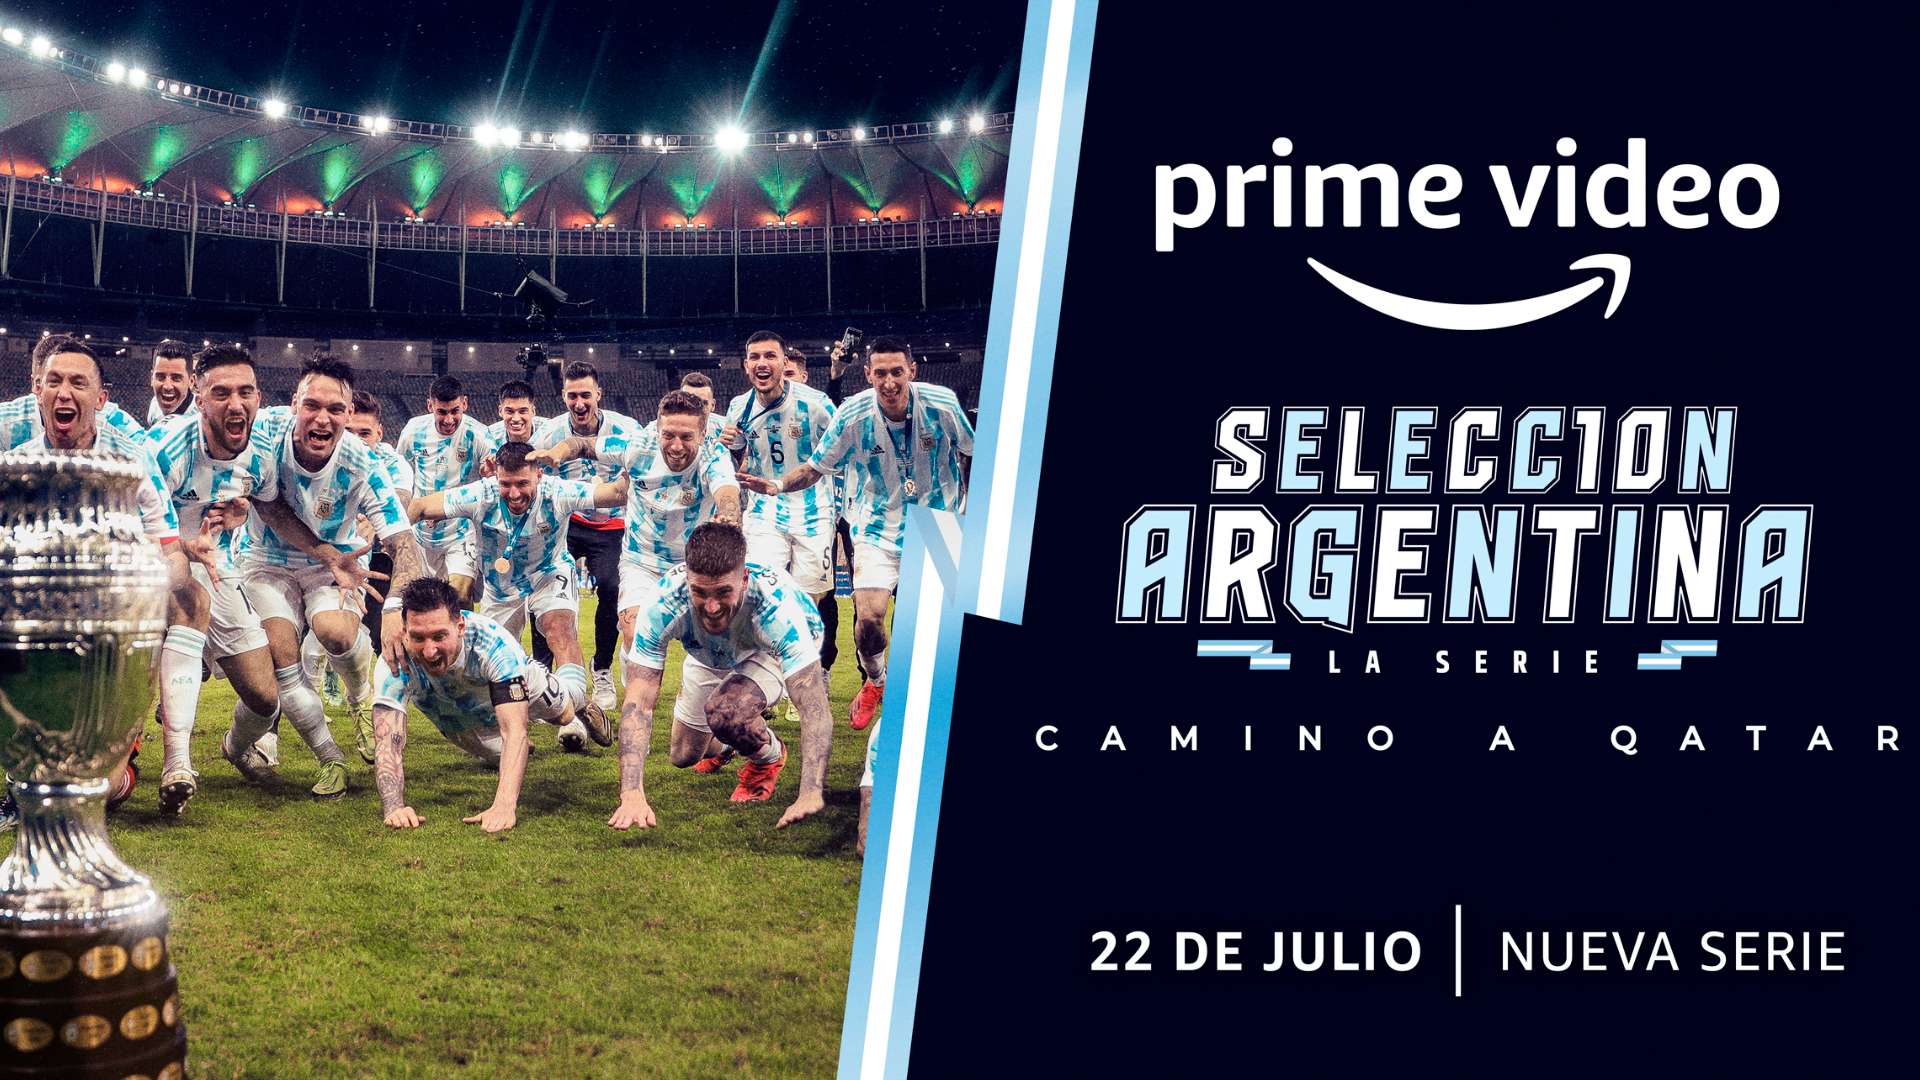 Seleccion argentina prime video serie